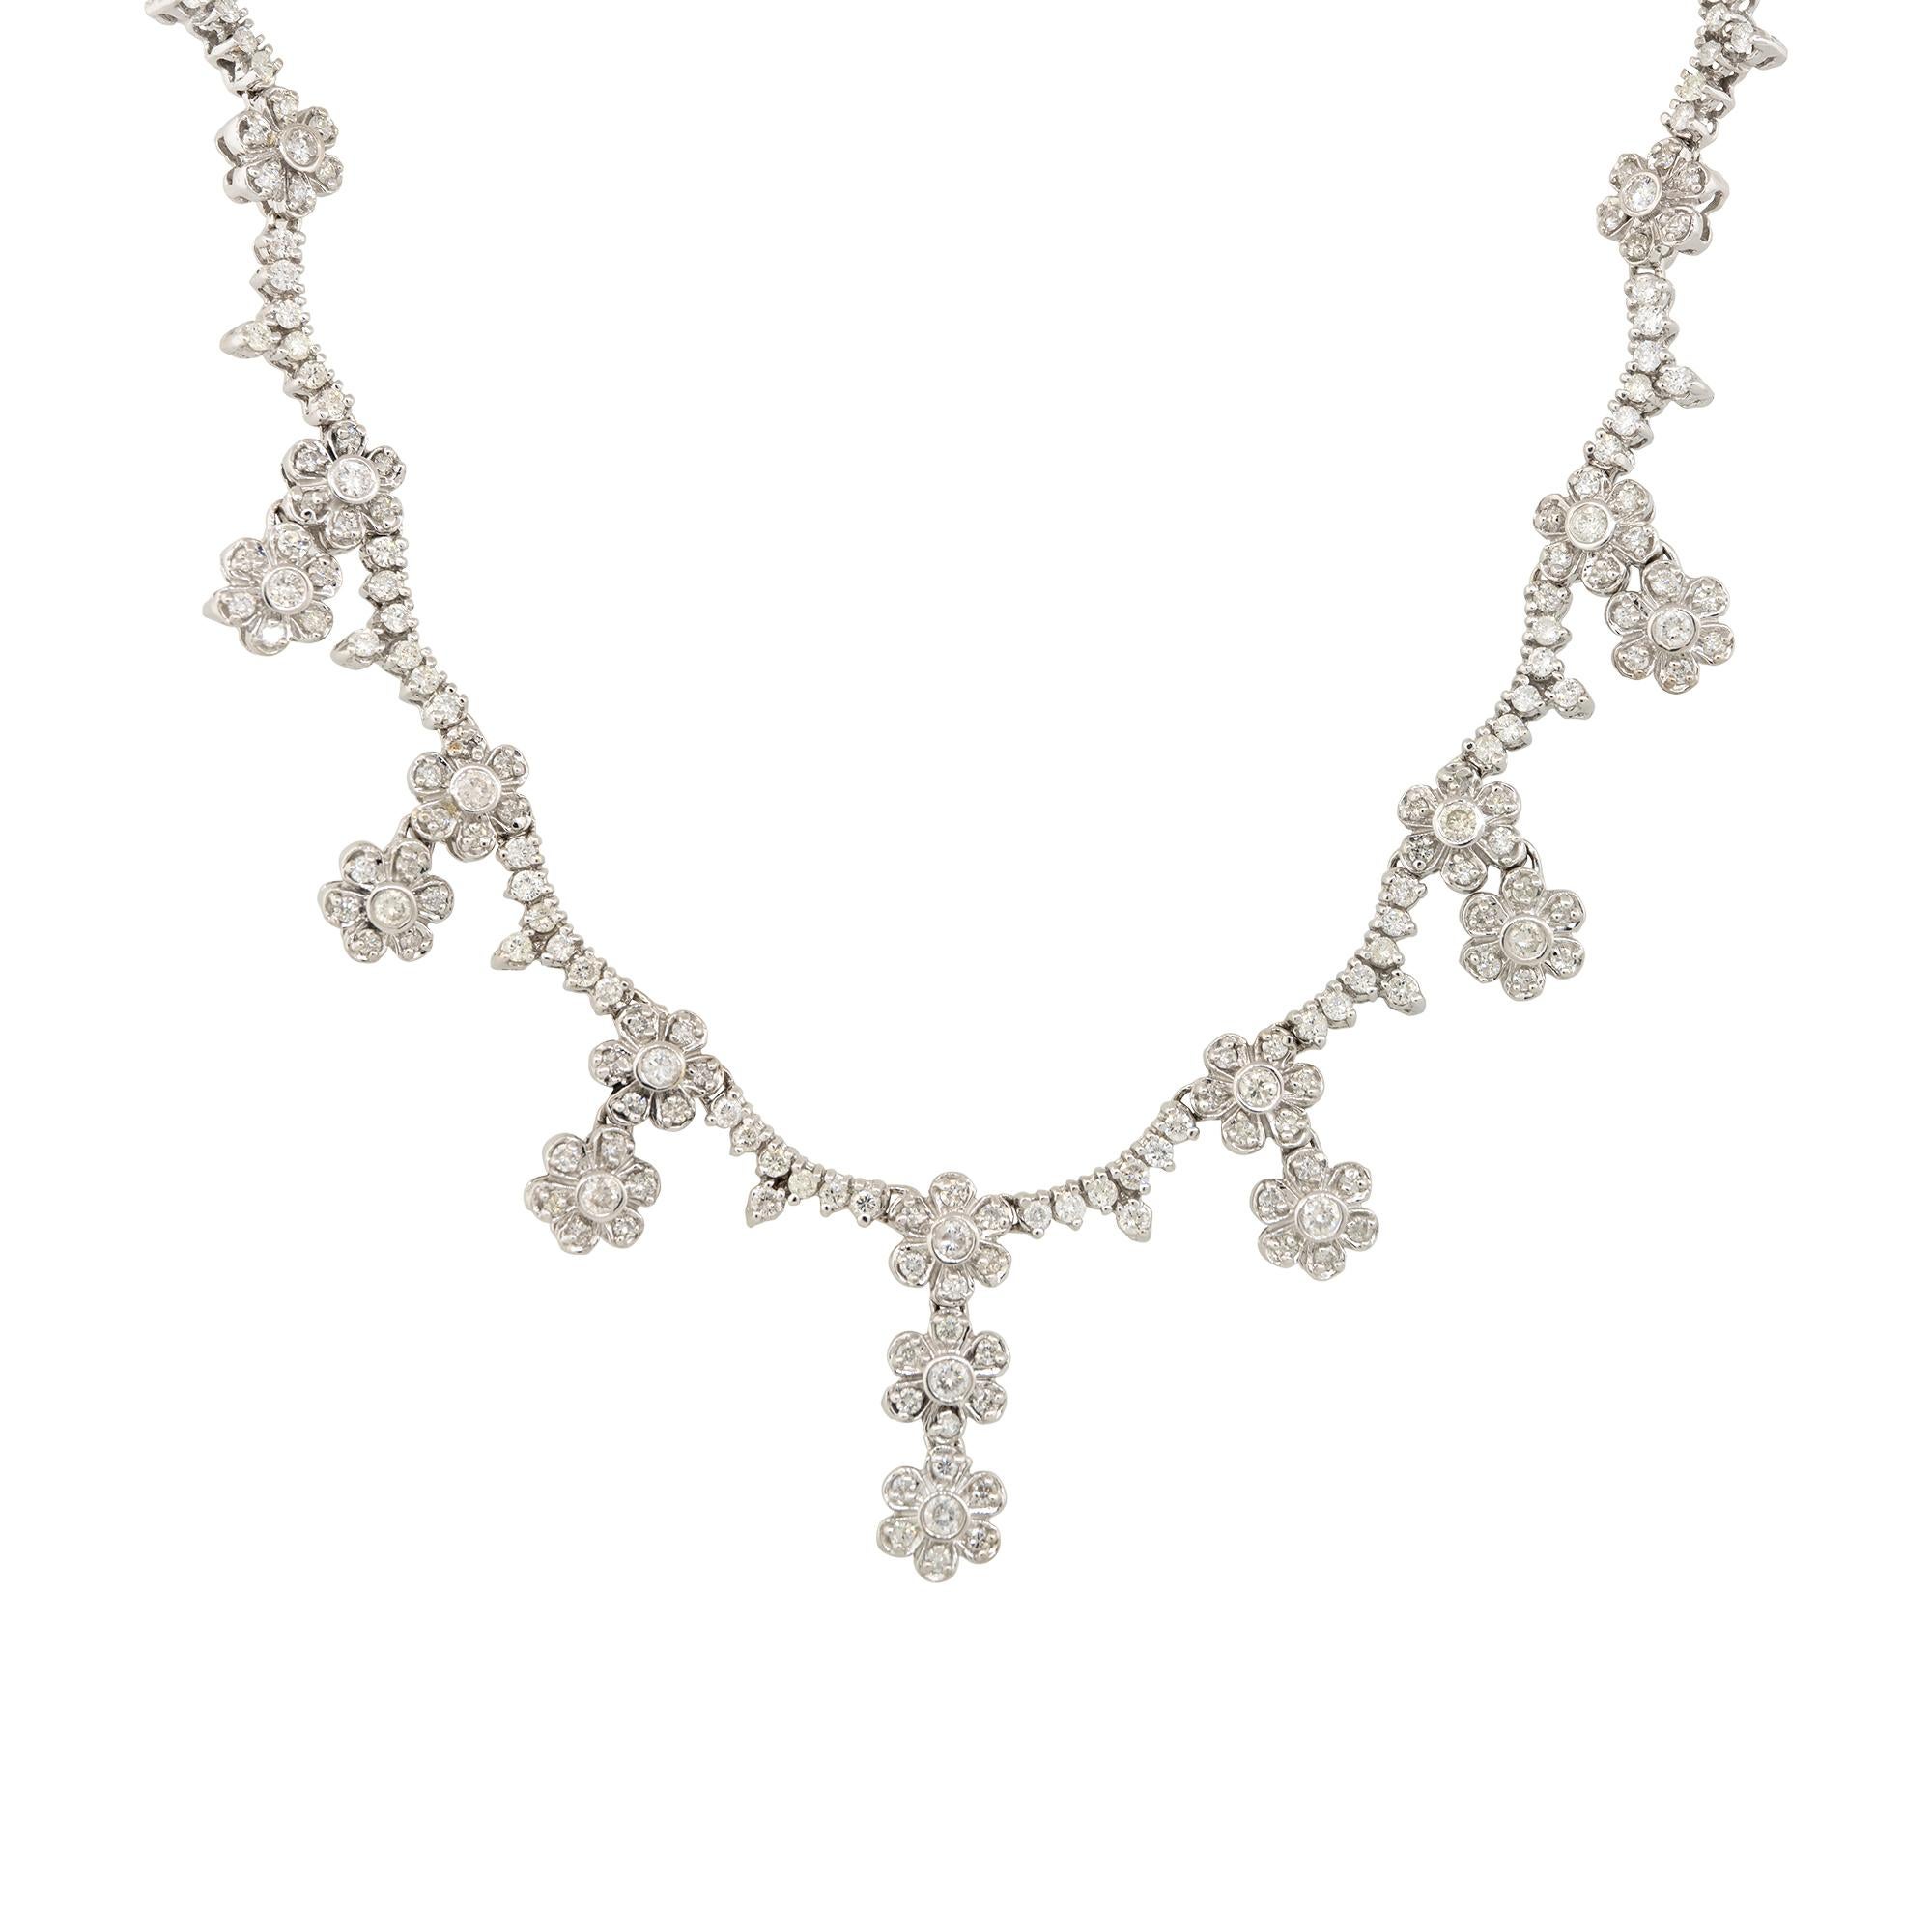 Ce collier de gouttes de diamants à fleurs multiples est le bijou parfait pour une personne qui aime les fleurs et les diamants ! Ce collier est serti de diamants ronds de taille brillant et la façon dont ils sont sertis donne un aspect festonné. Ce